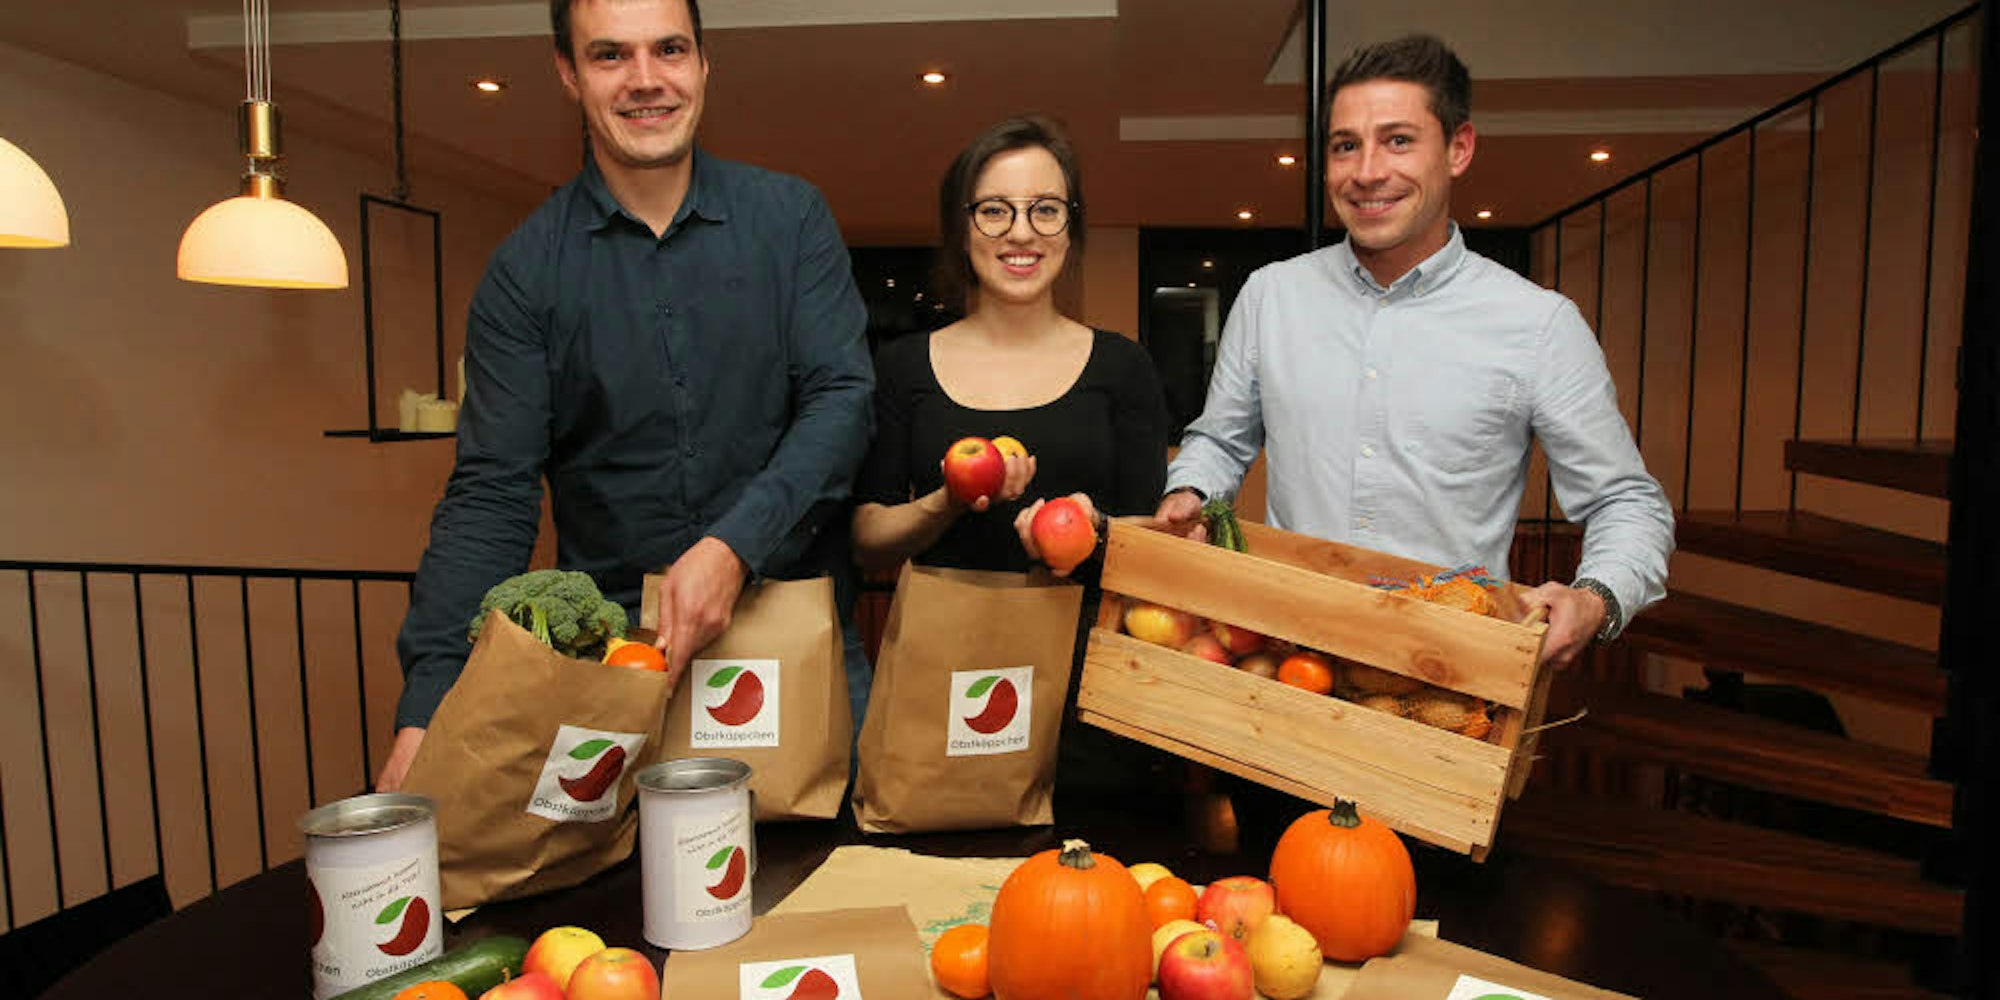 Obstkäppchen der ersten Stunde: (v. l.) Johannes Radschinski, Carina Raddatz und Christopher Kossack wollen im Dezember mit ihren Obstlieferungen beginnen.